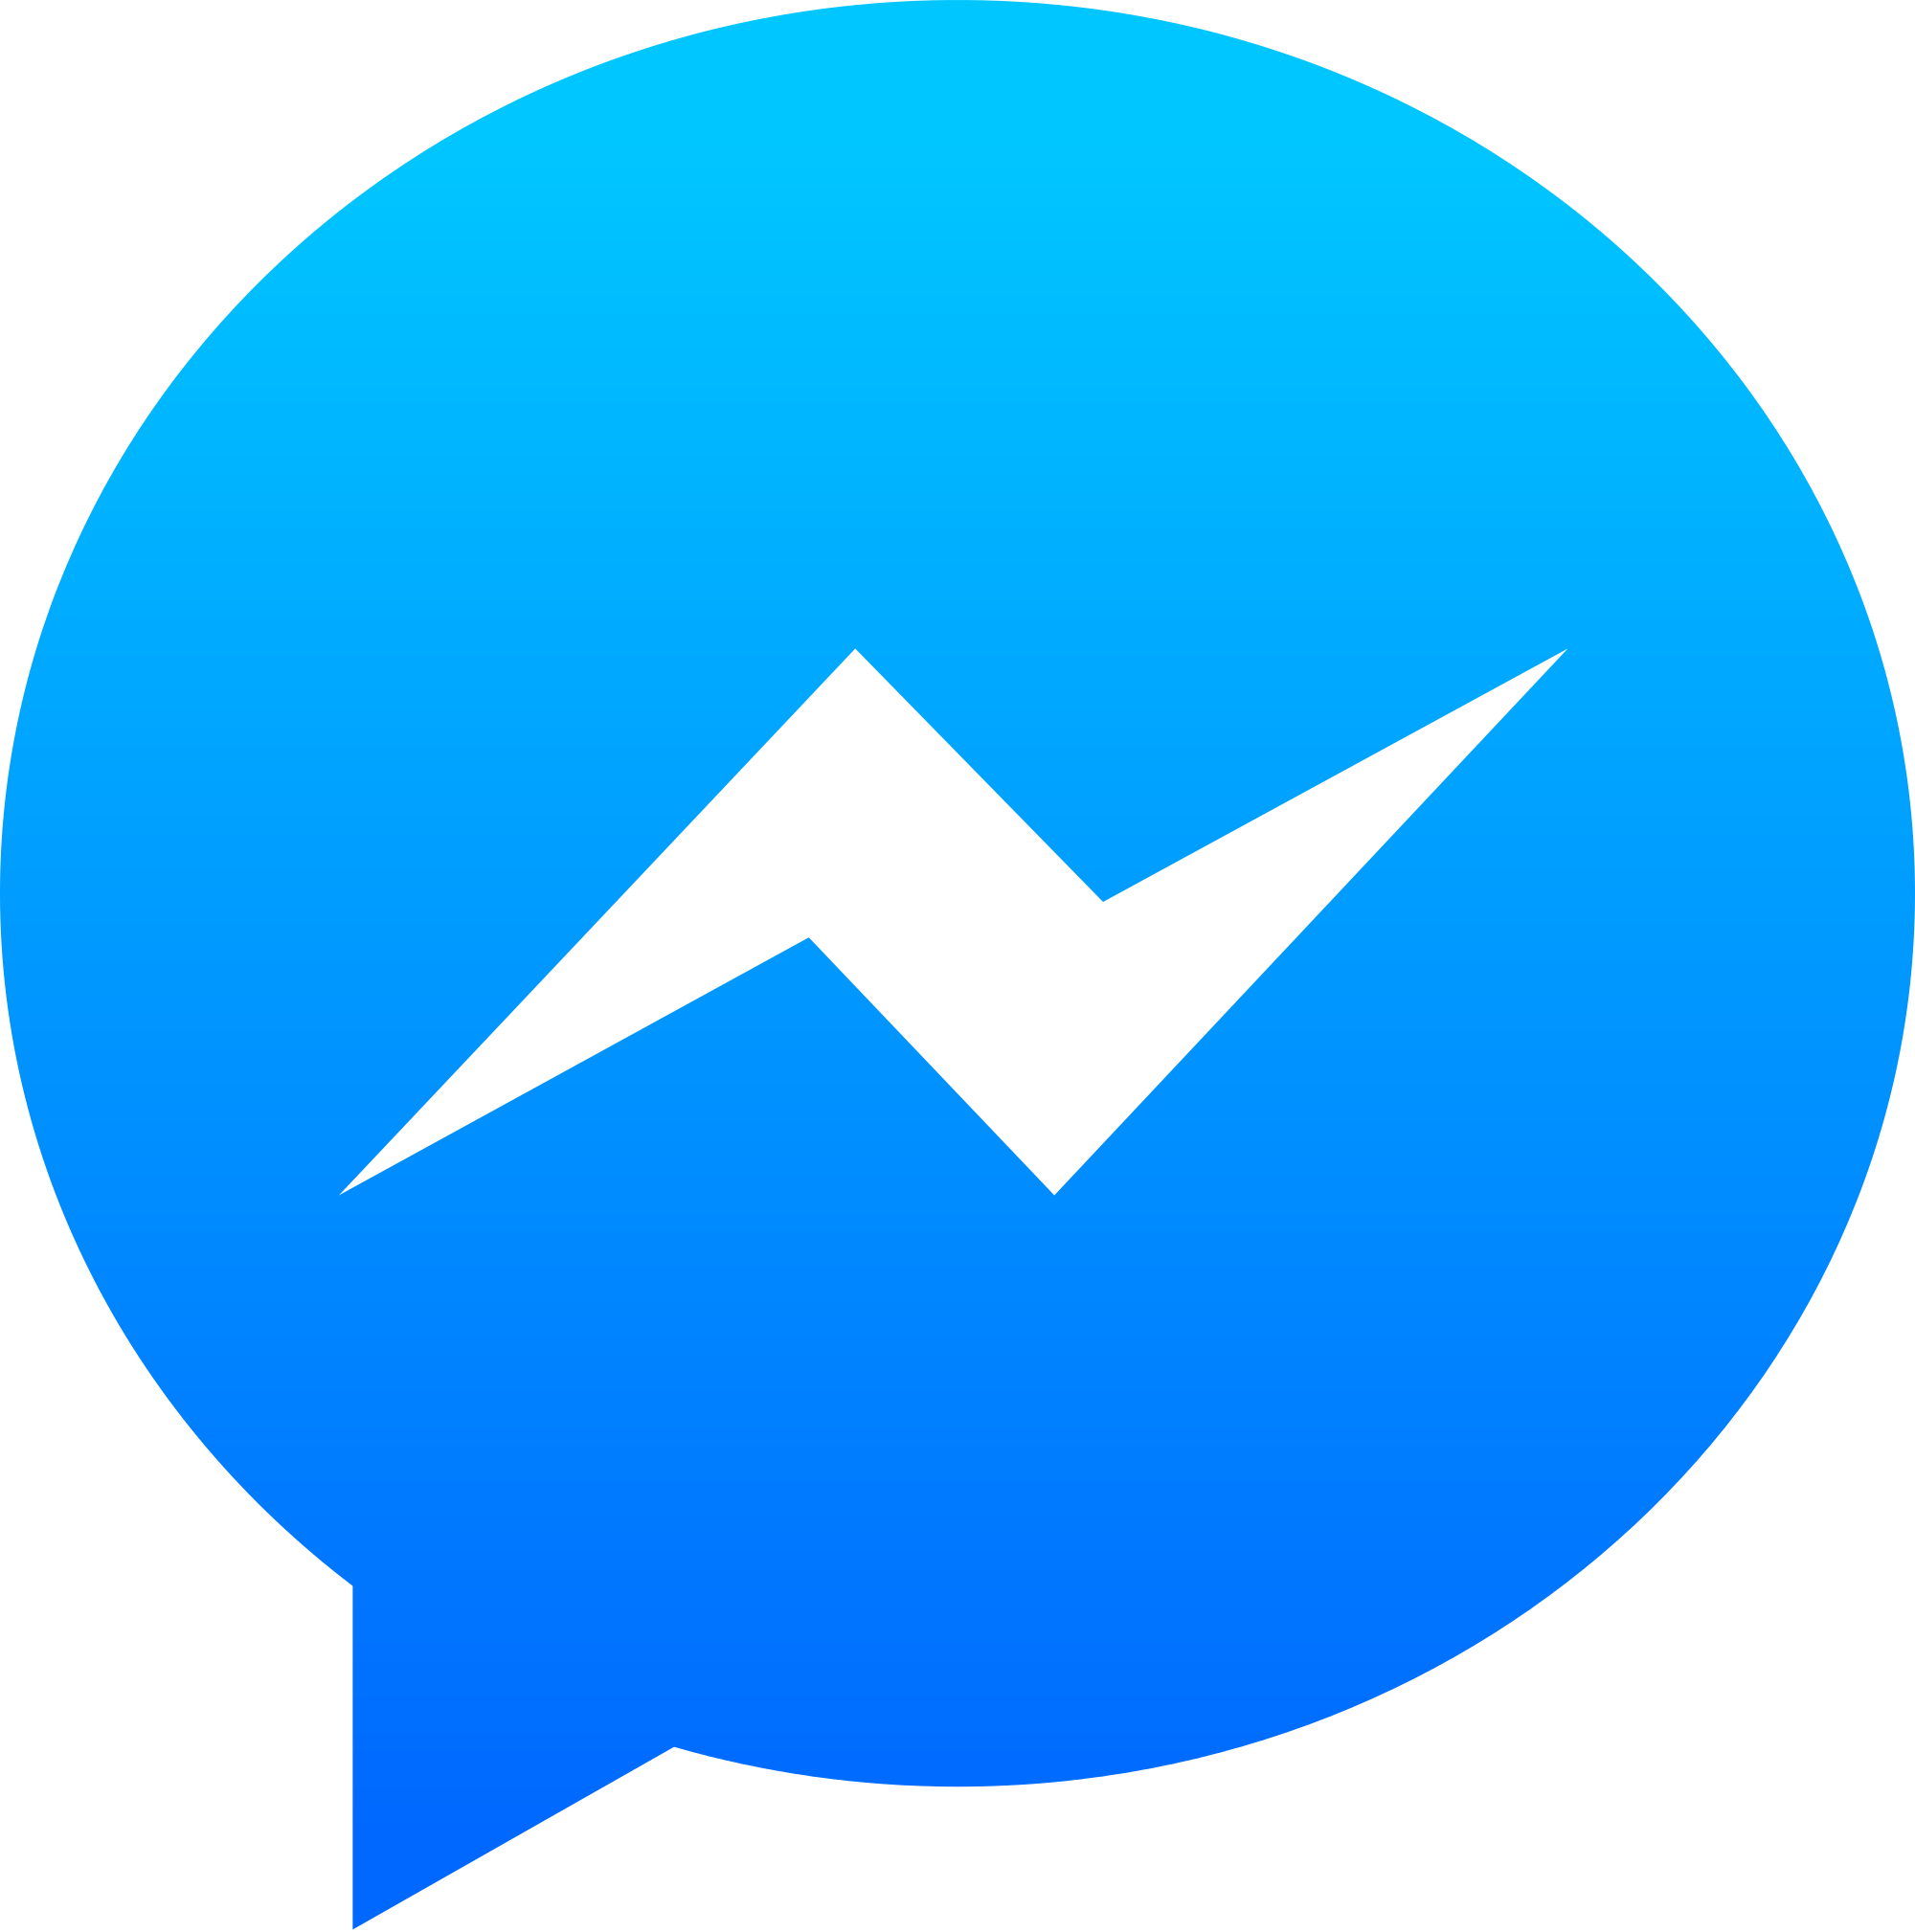 Messenger Logo - Facebook Messenger App Logo., Facebook Messenger PNG - Free PNG